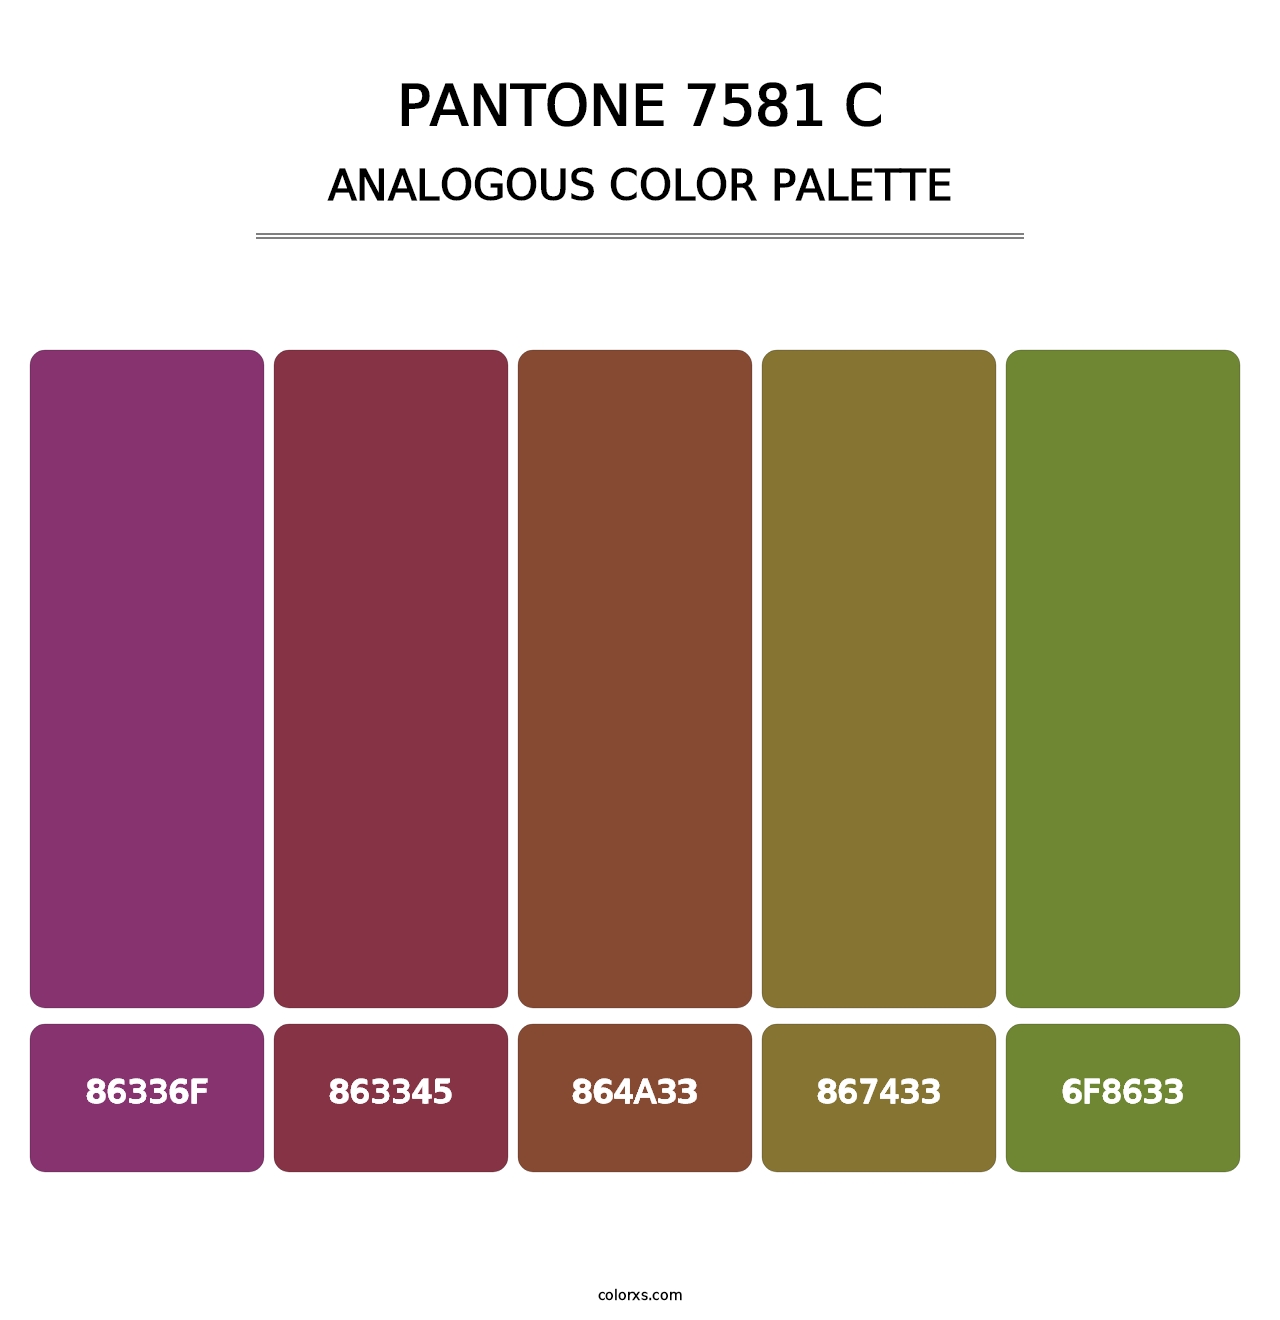 PANTONE 7581 C - Analogous Color Palette